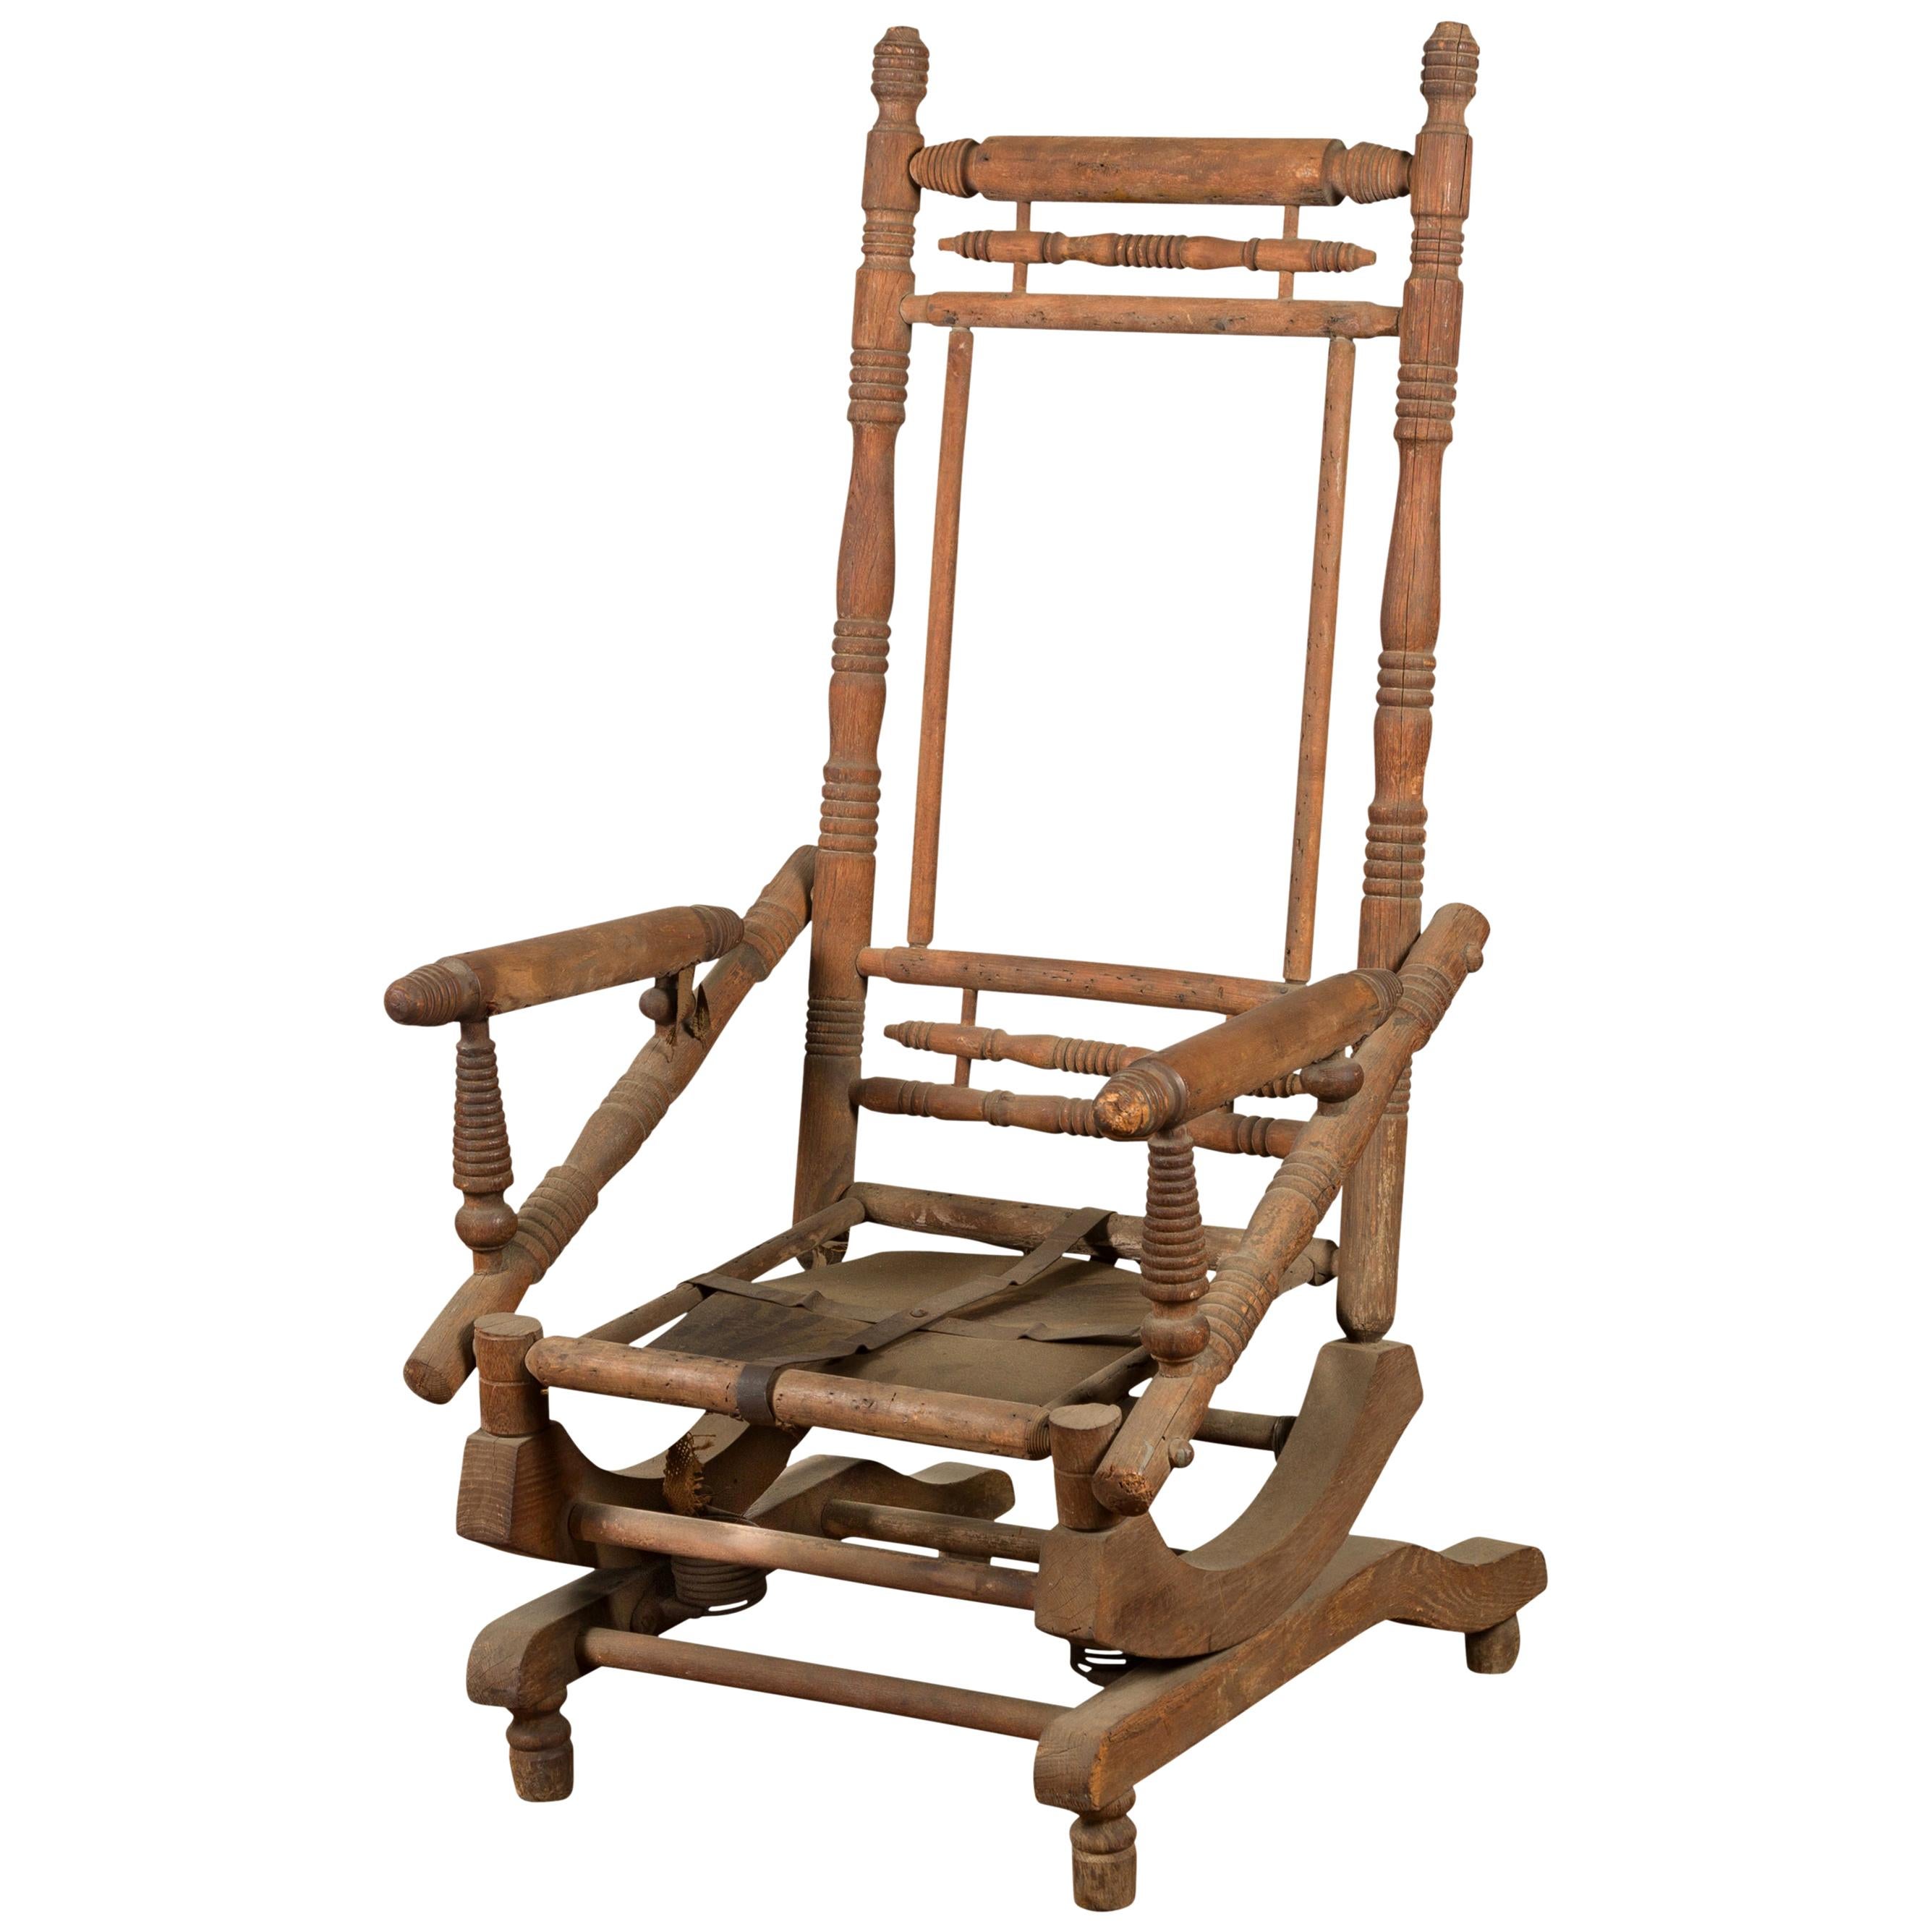 Chaise à bascule indienne rustique du 19ème siècle avec accents en métal et supports tournés